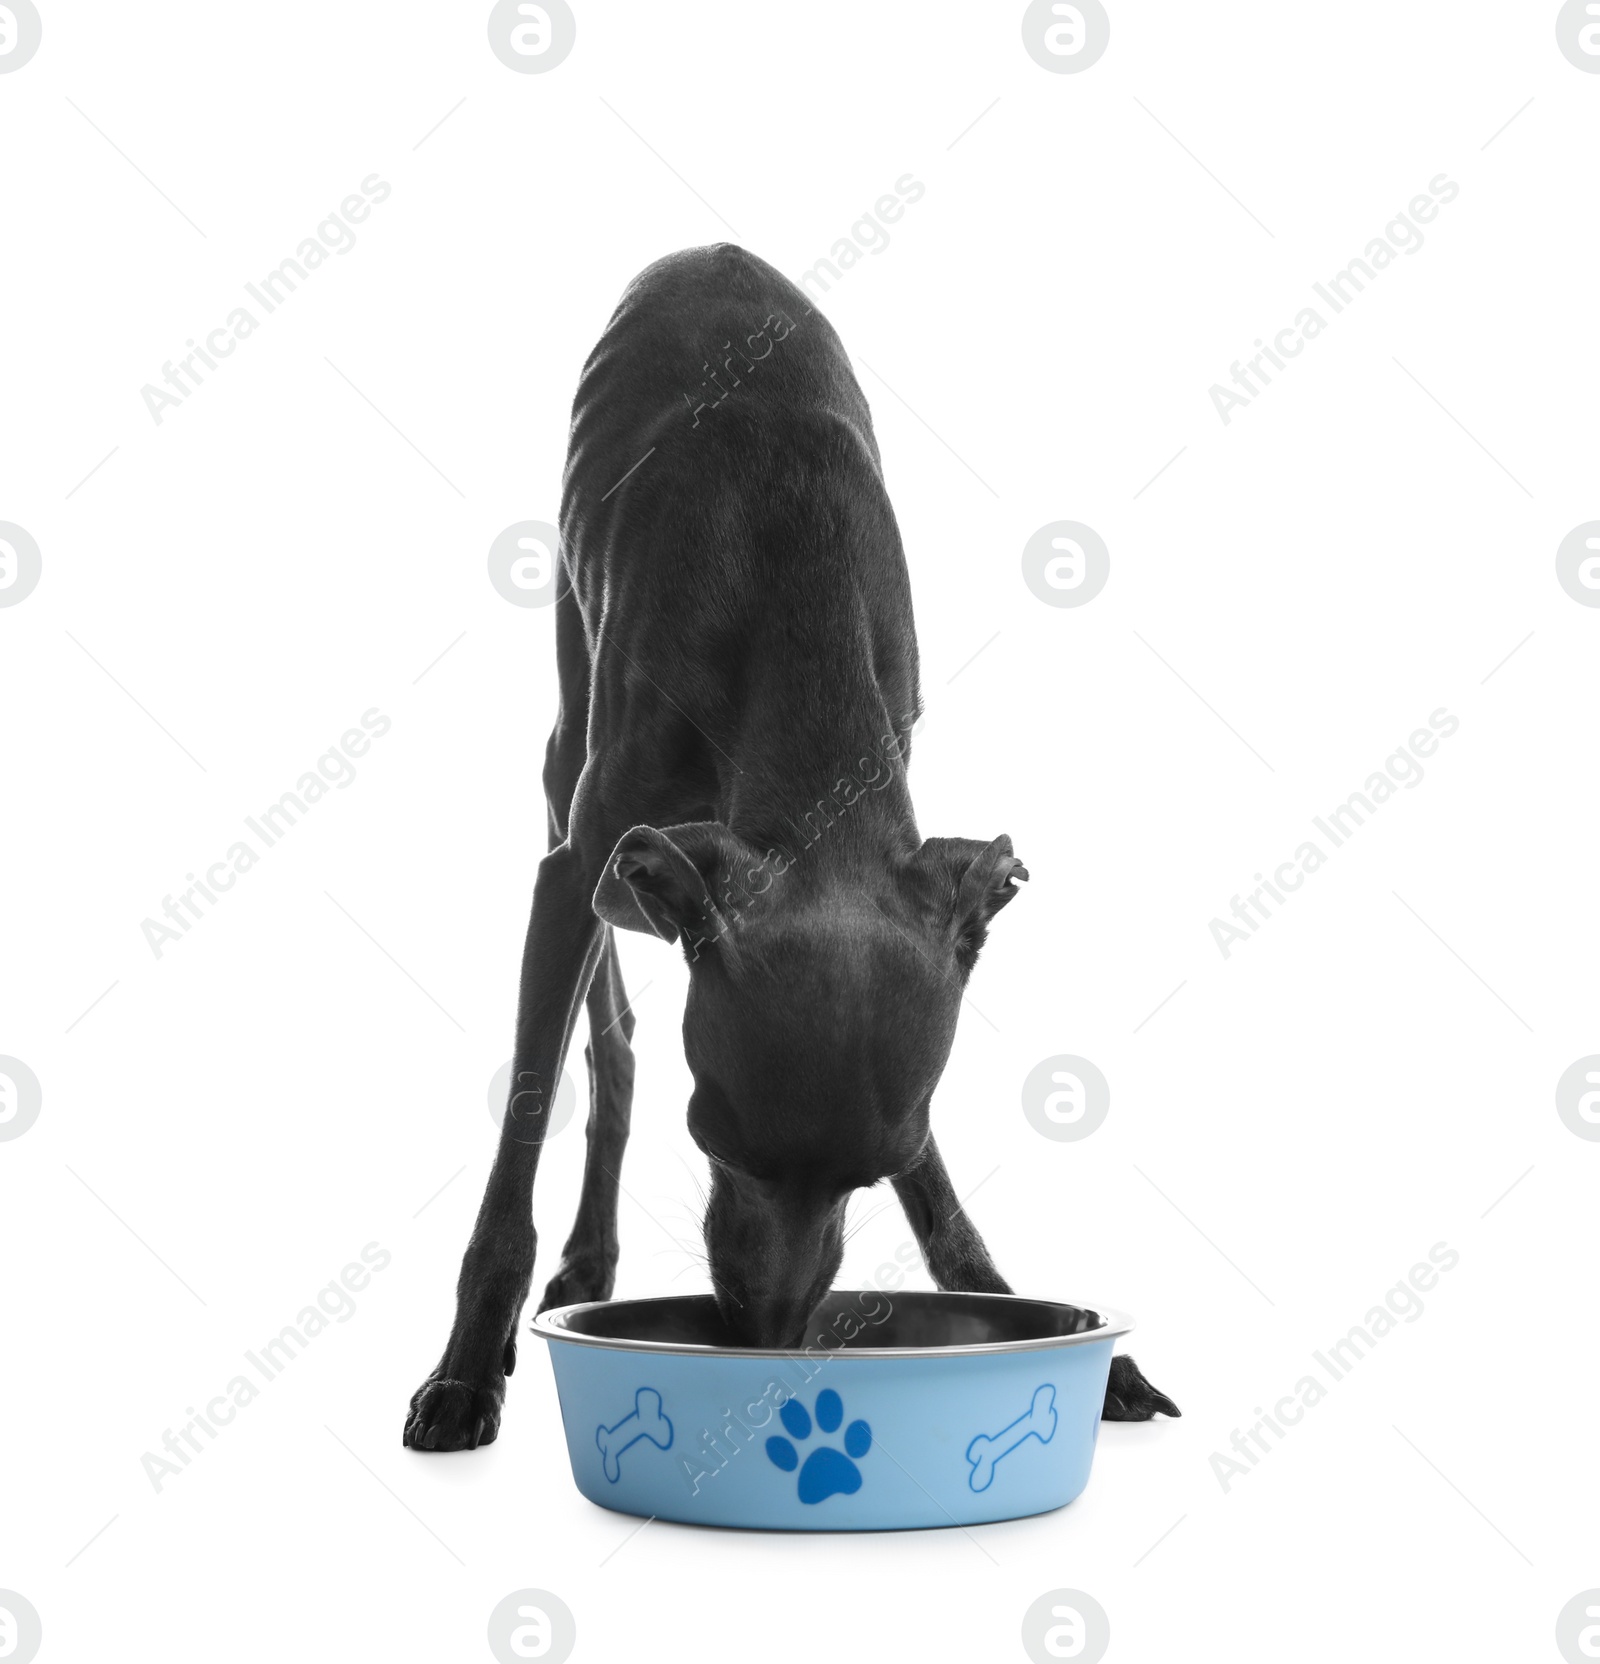 Photo of Italian Greyhound dog eating from bowl on white background